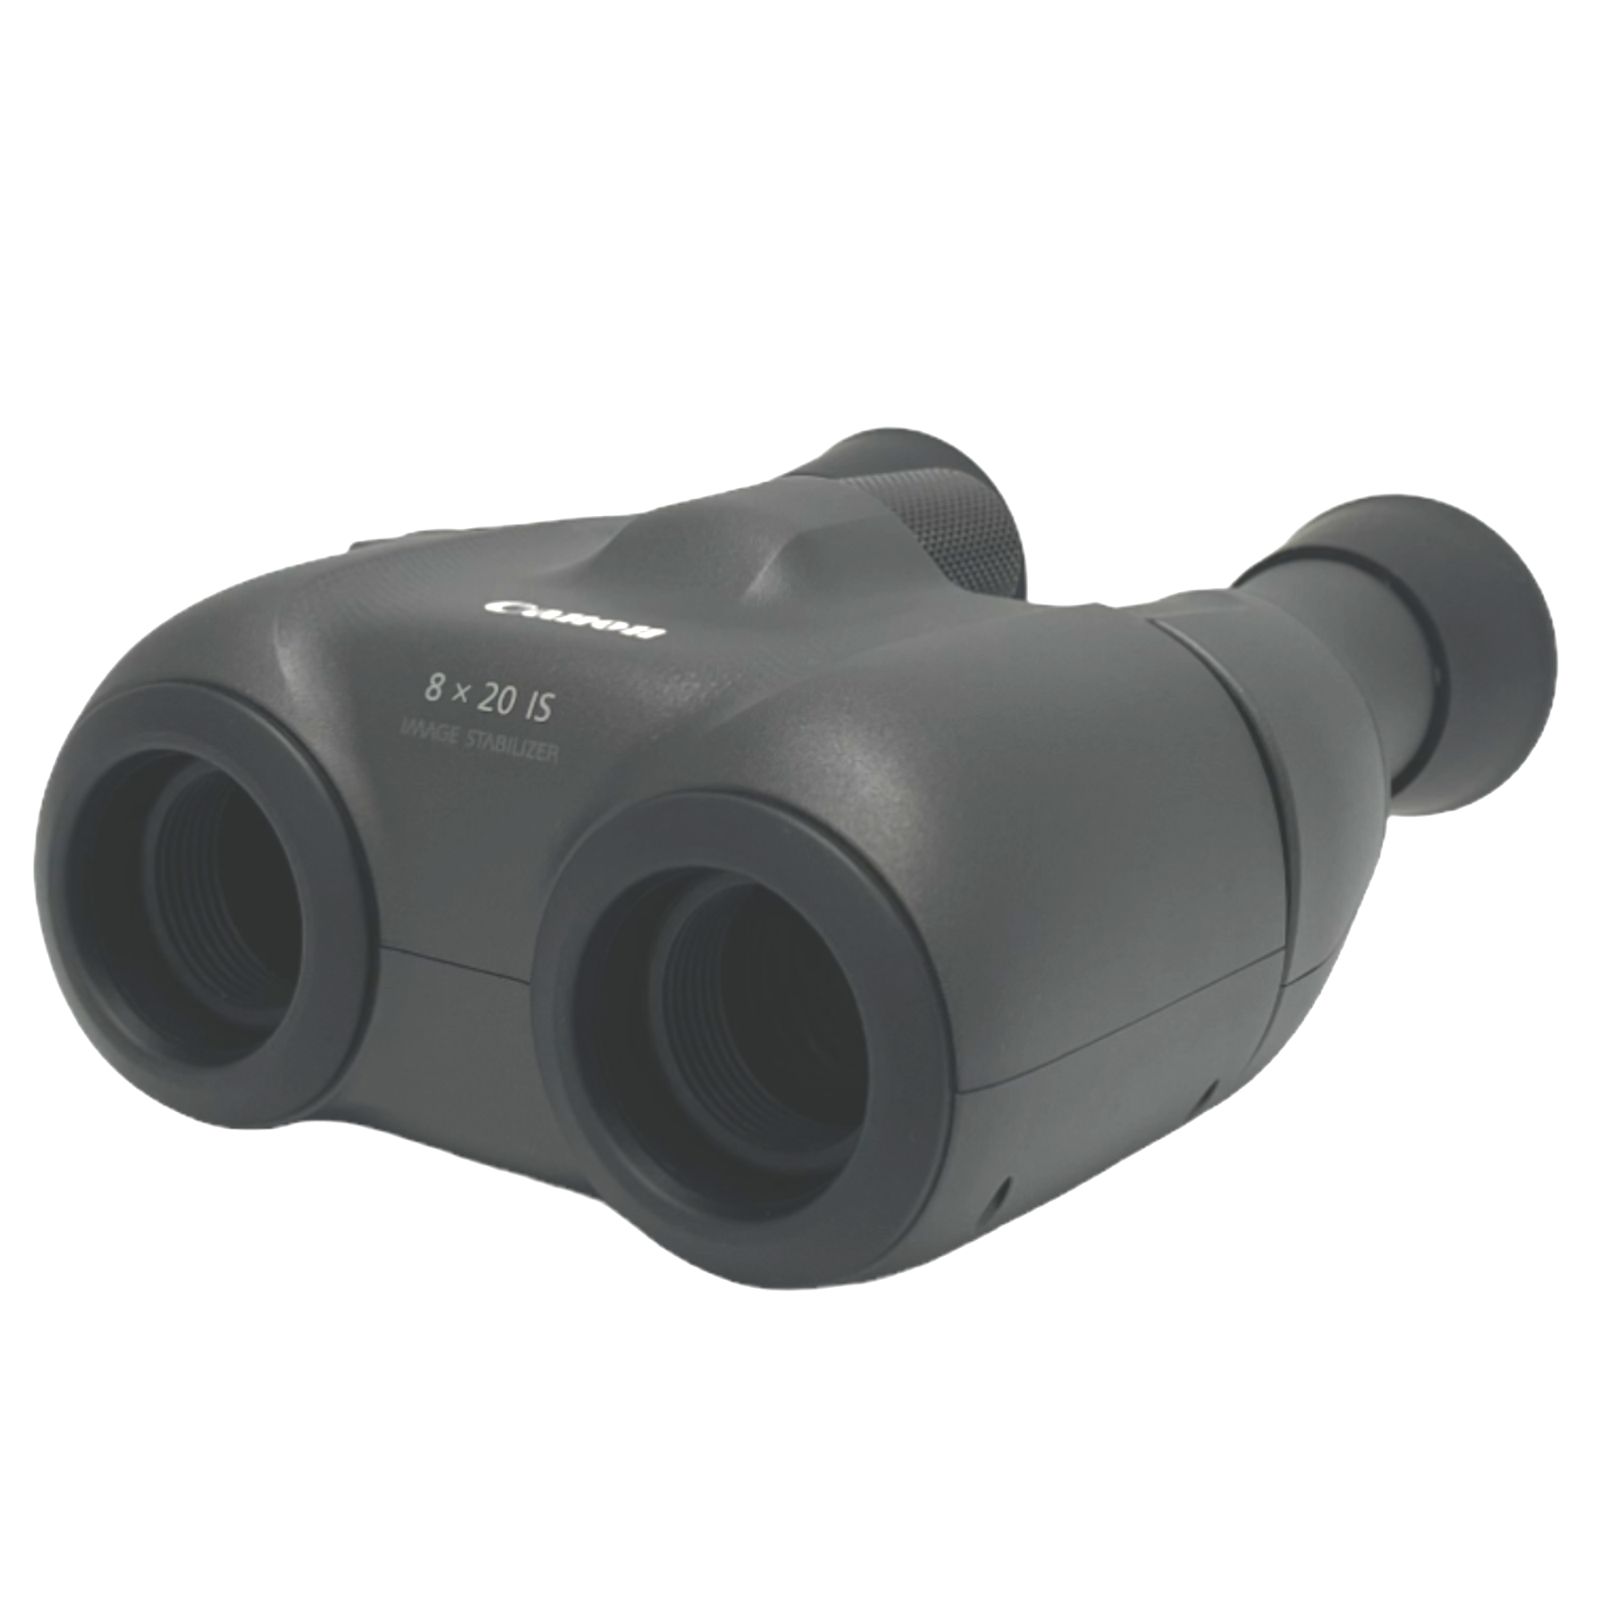 ジャンク] Canon キヤノン 防振双眼鏡 8×20 IS BINOCULARS 倍率8倍 